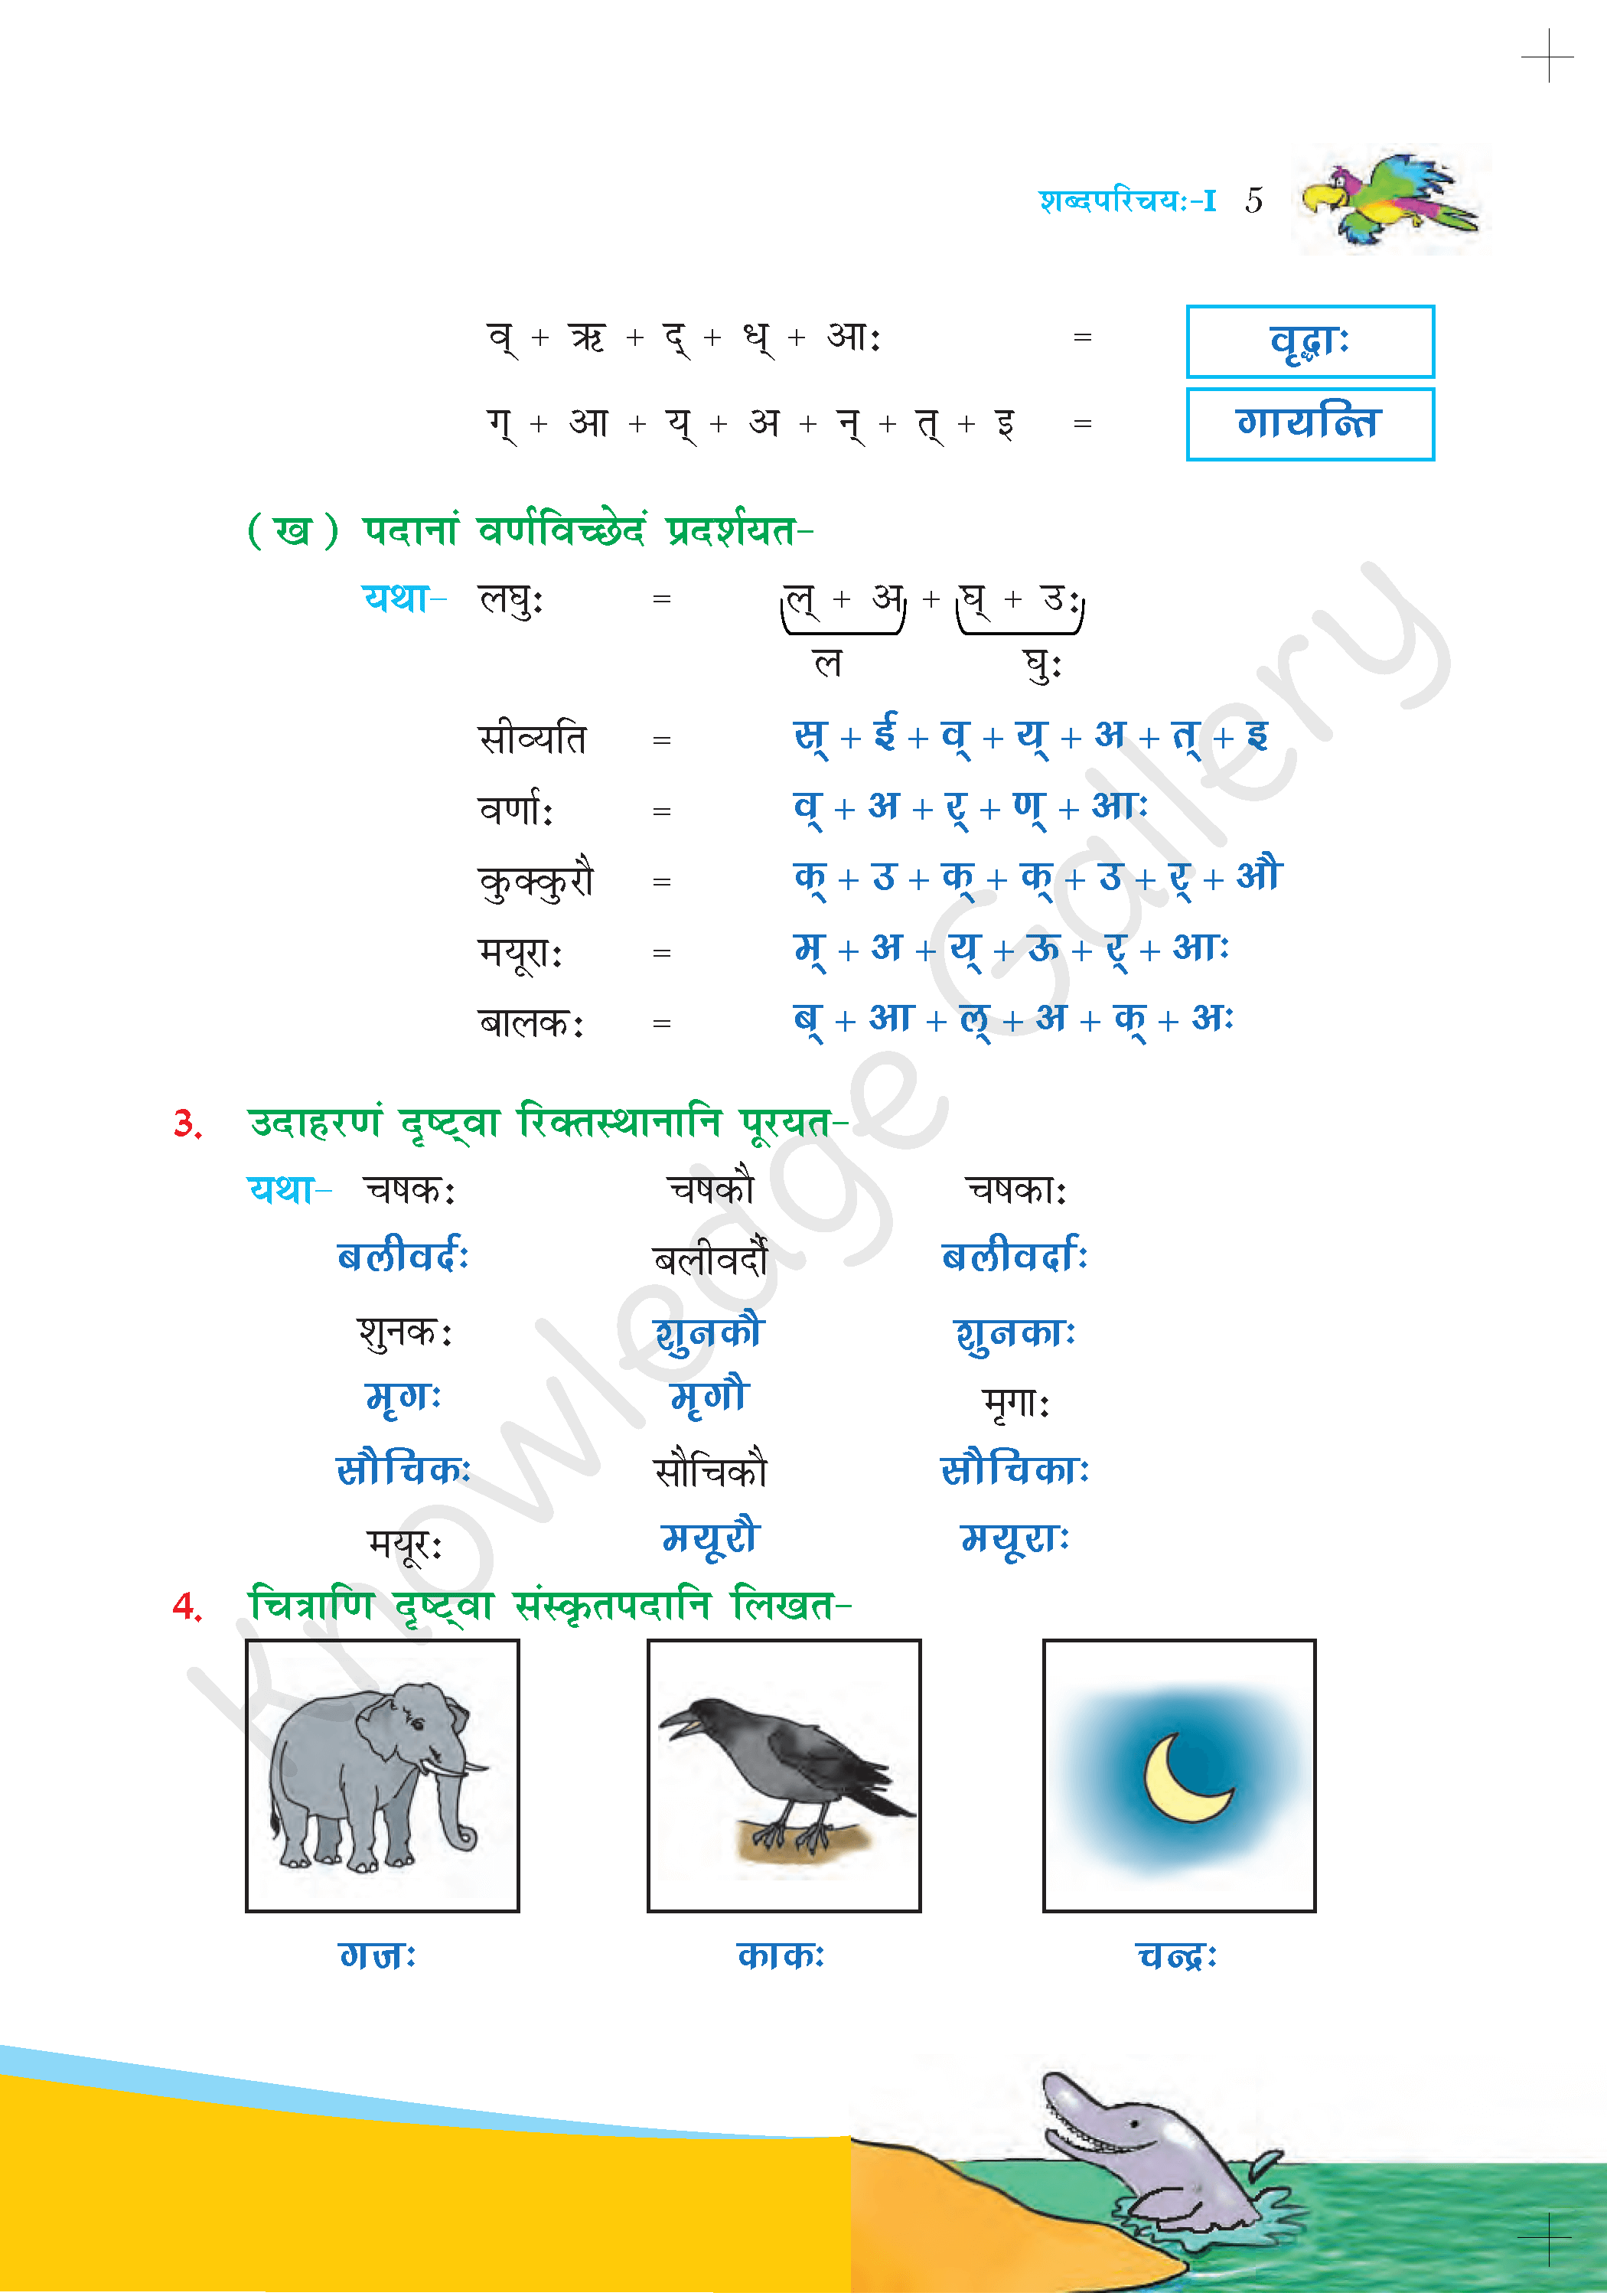 NCERT Solution For Class 6 Sanskrit Chapter 1 part 5